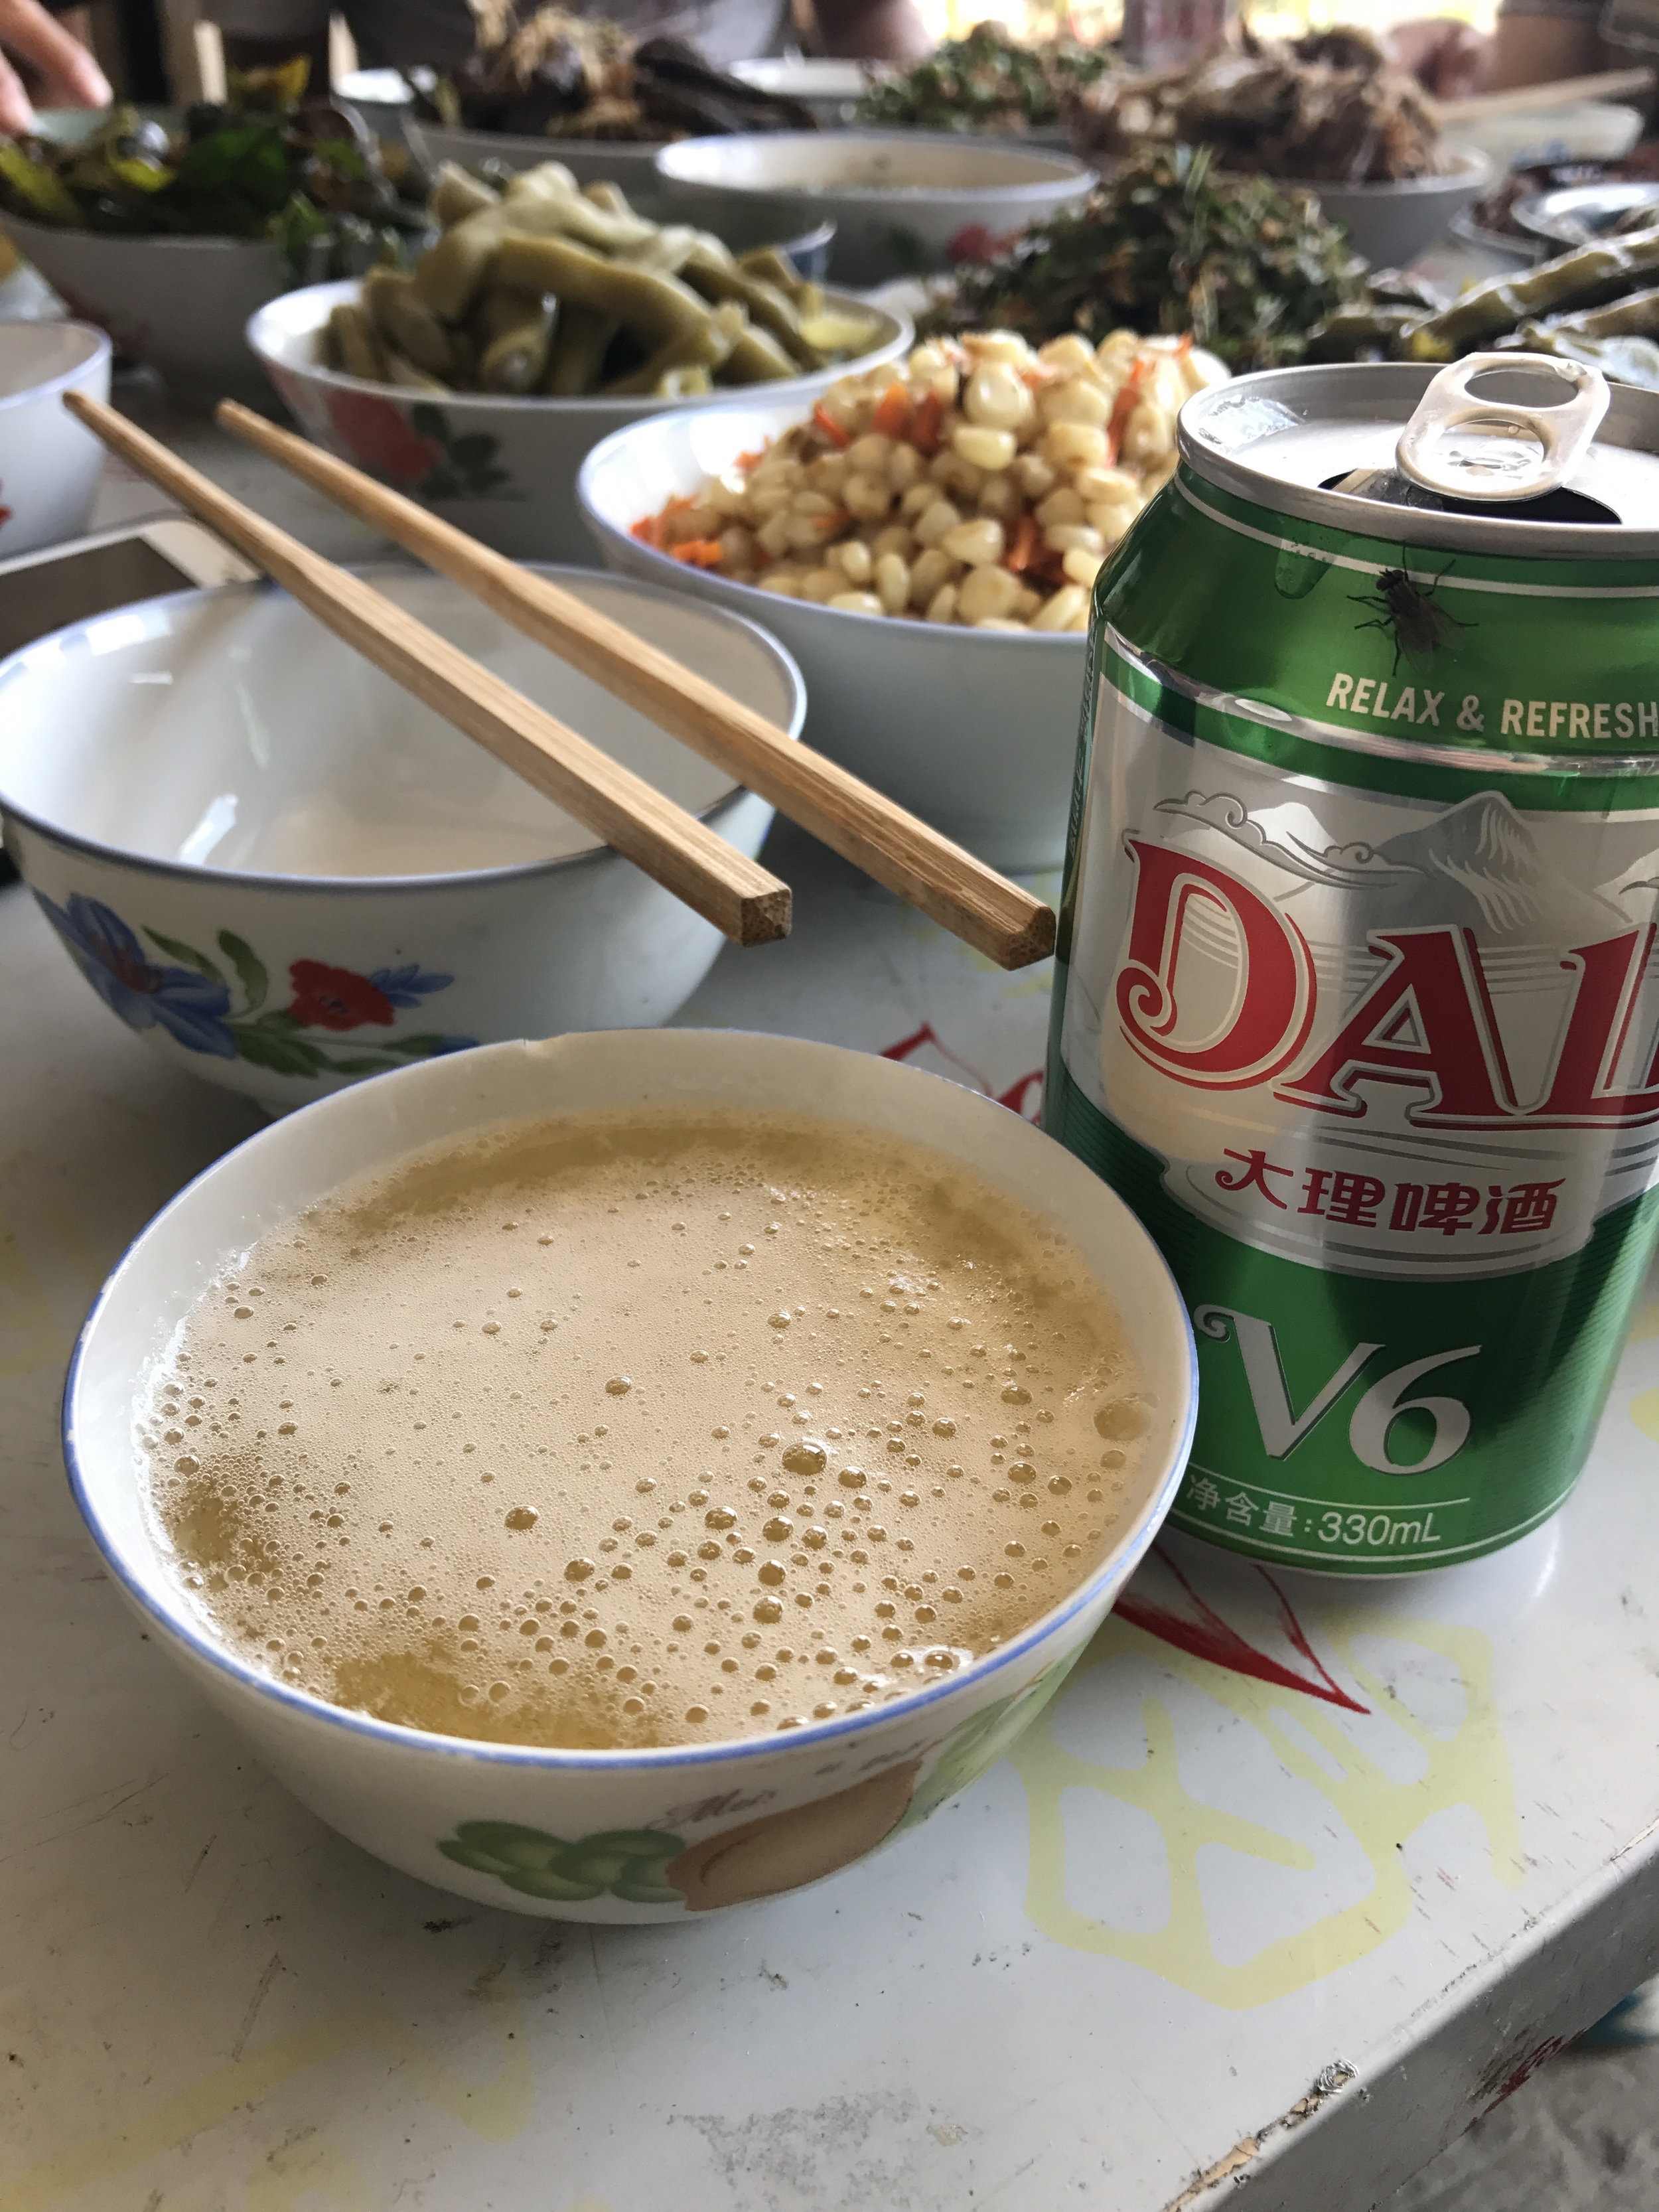  Bowls of beer in Dayangjie. 